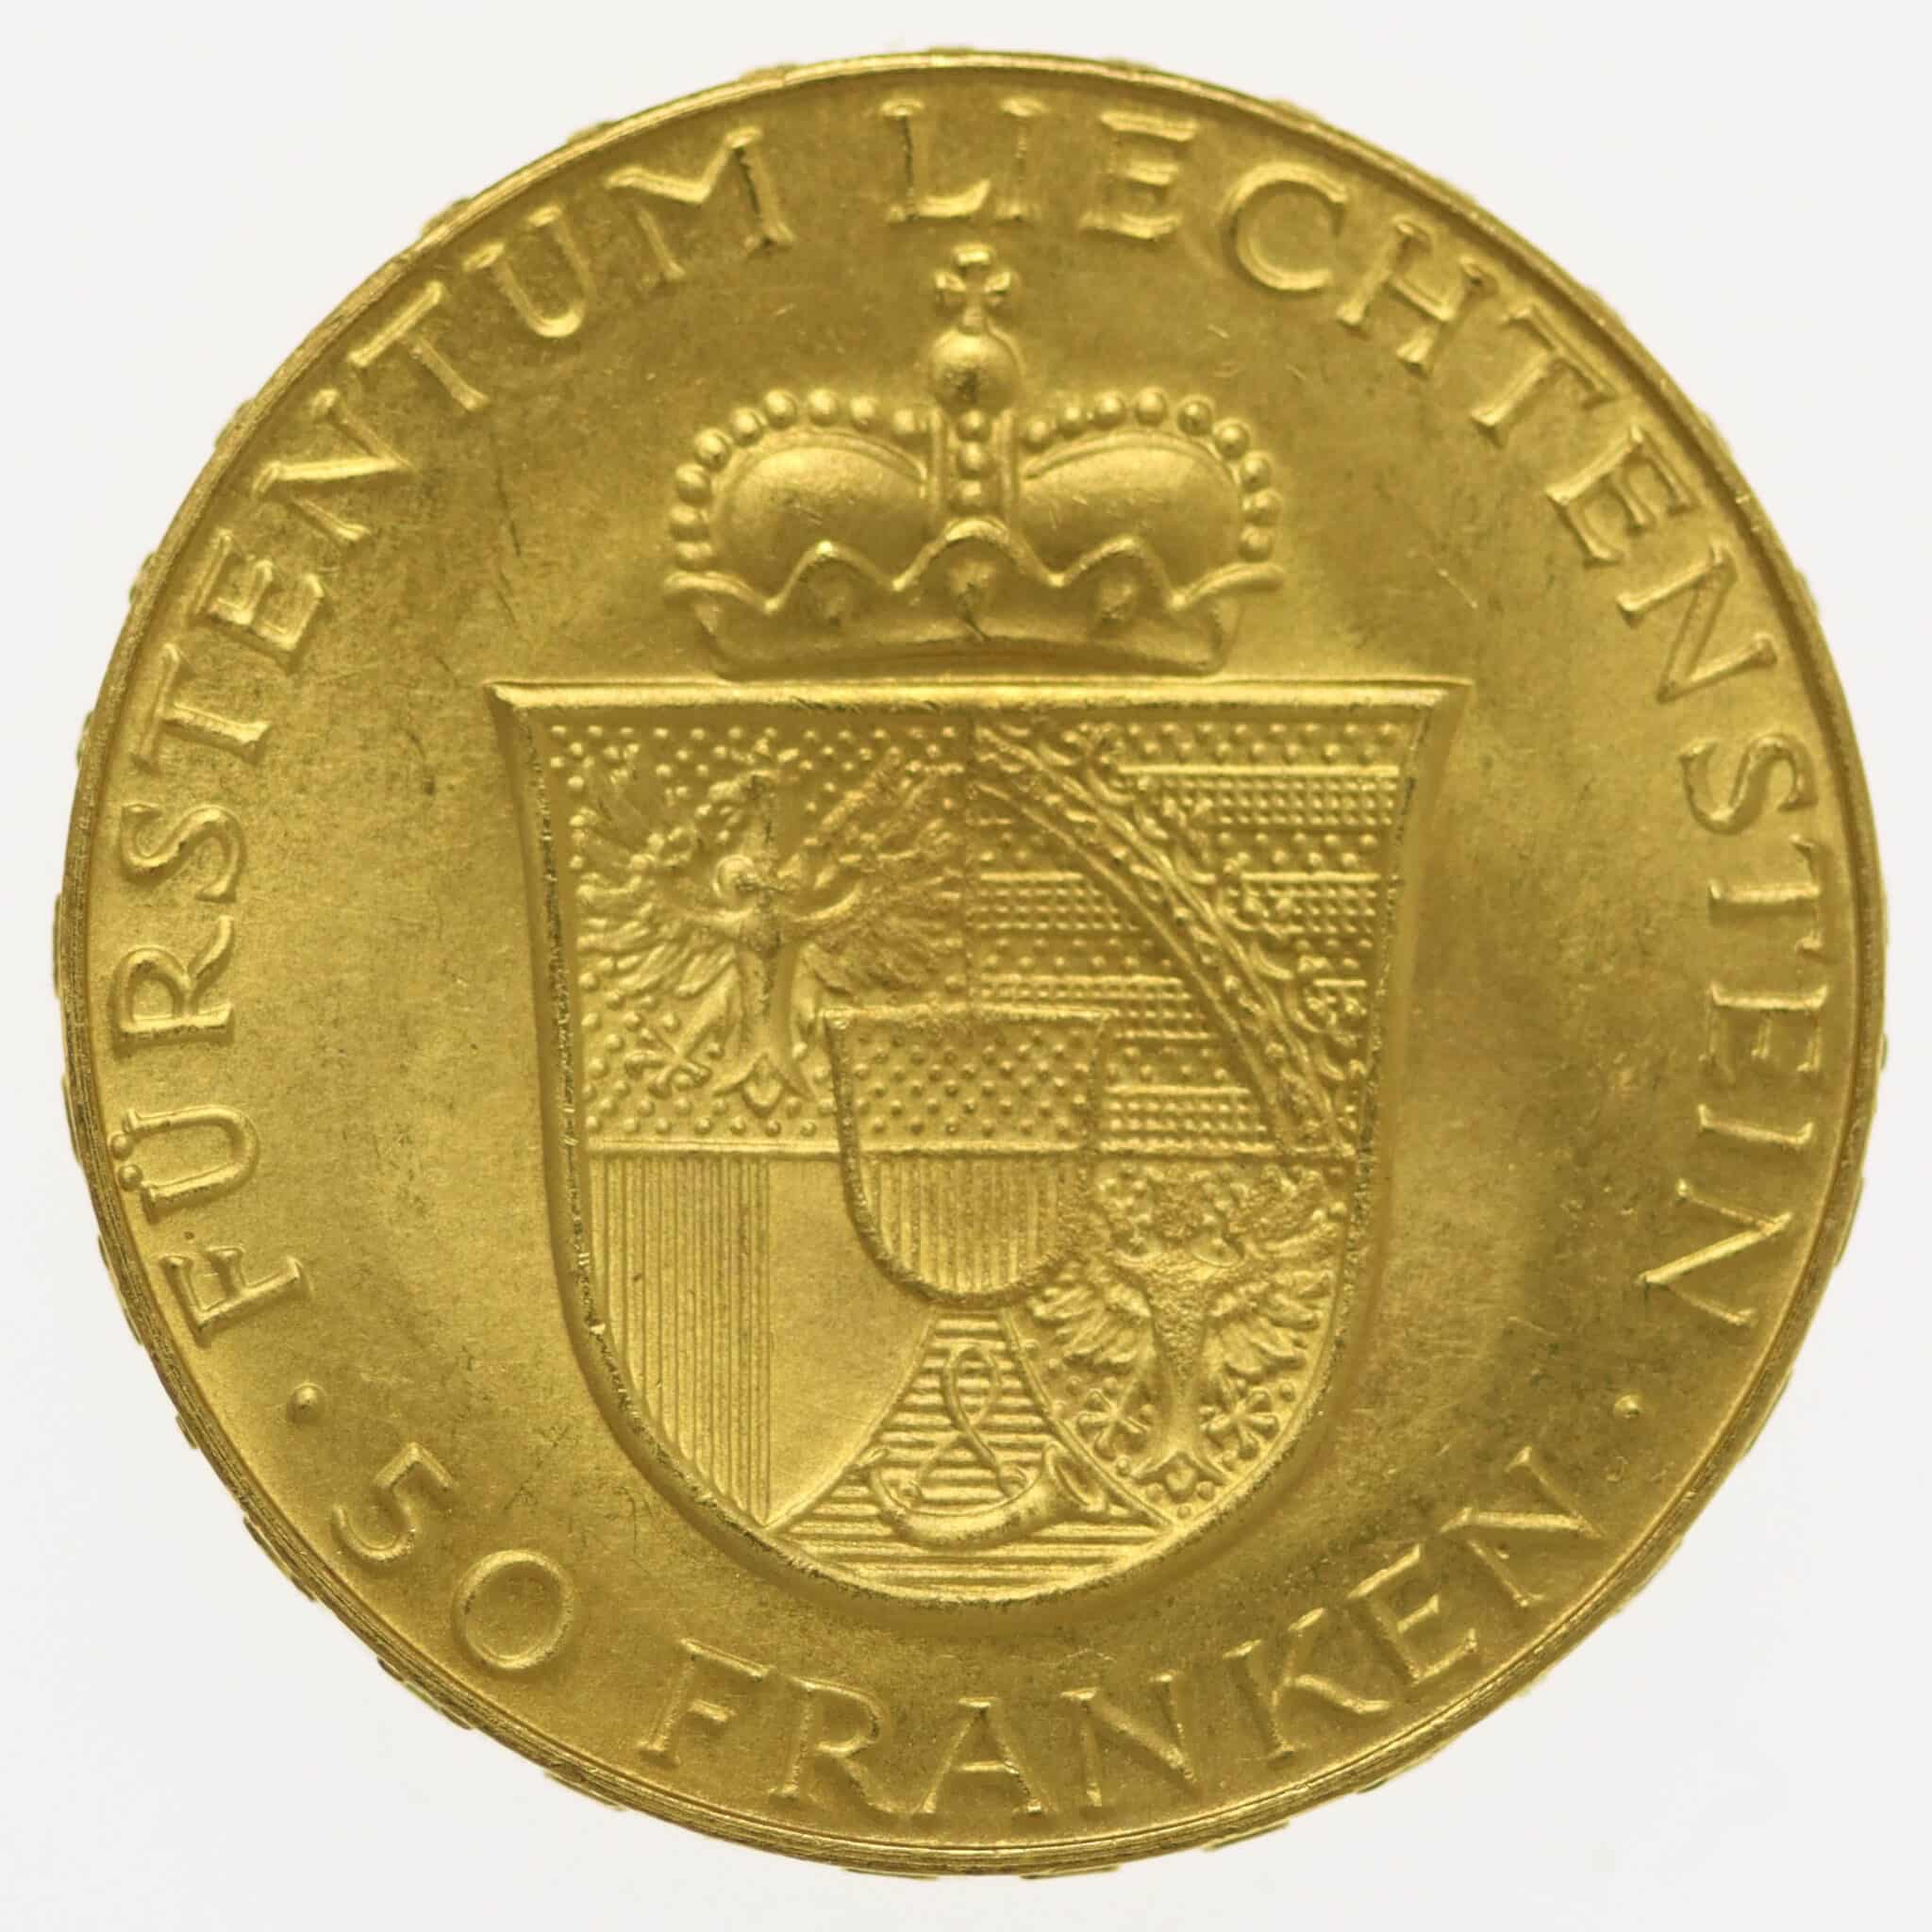 liechtenstein - Liechtenstein Franz Joseph II. 50 Franken 1956